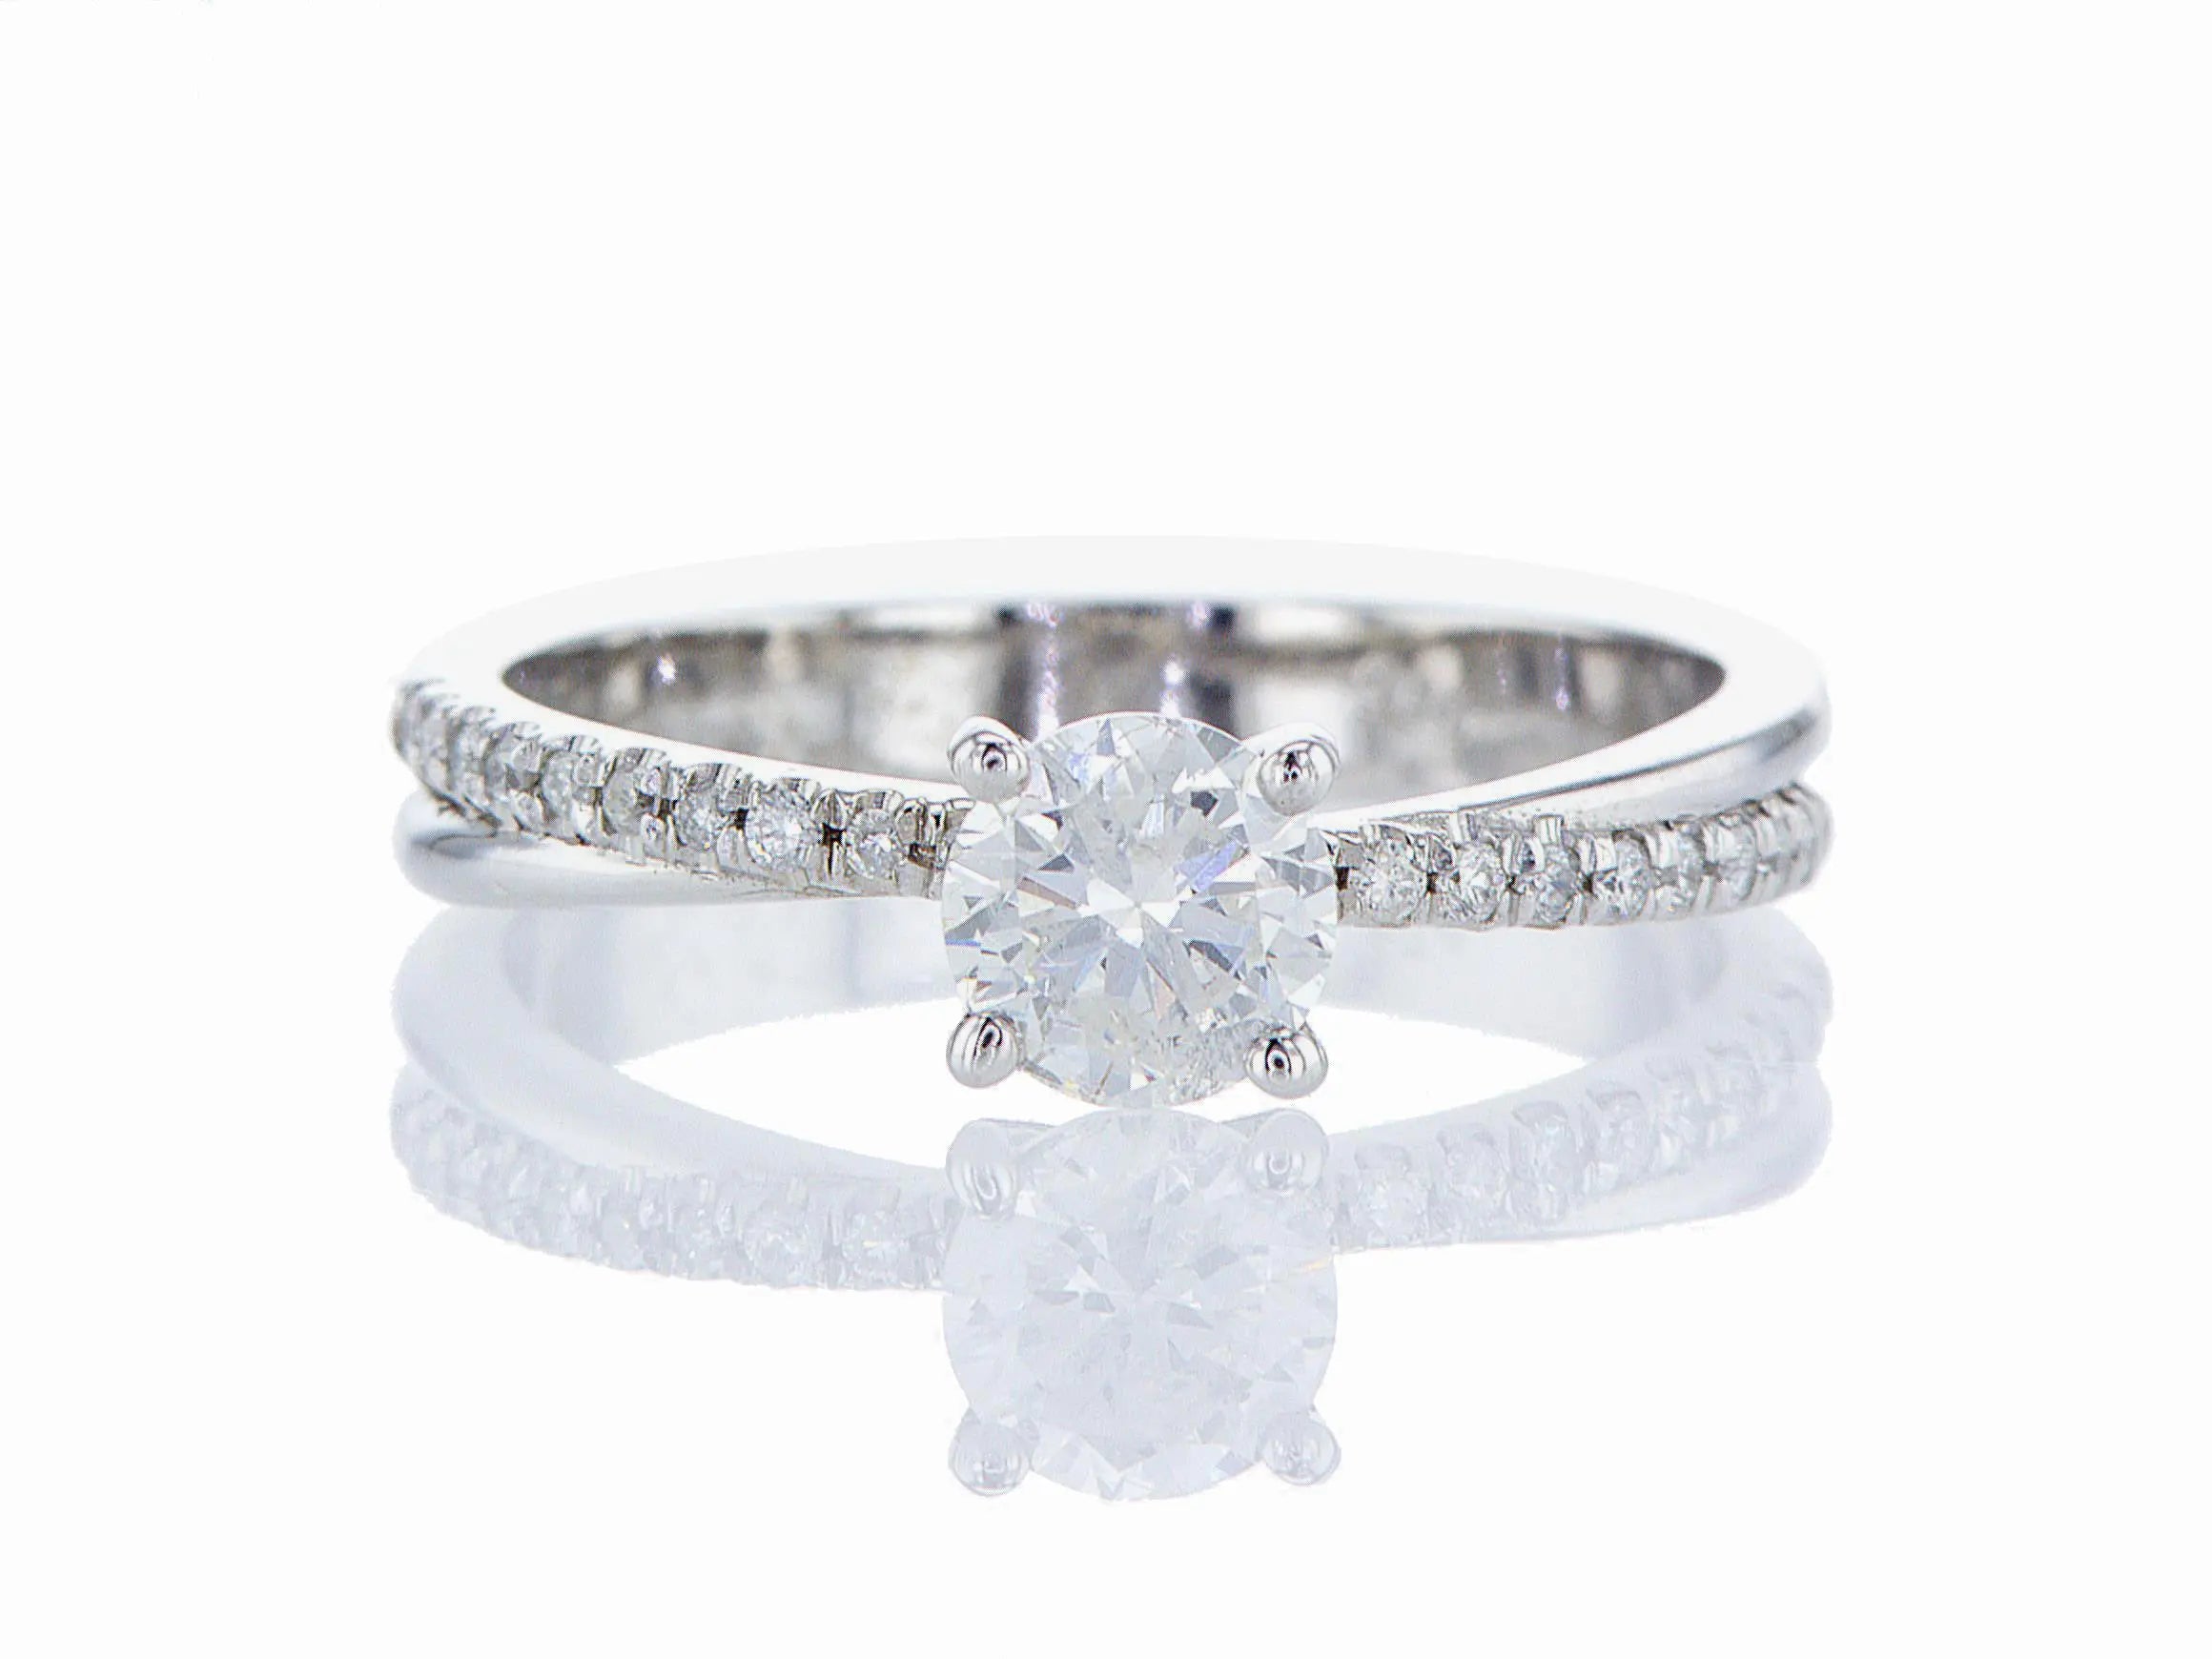 טבעת אירוסין יהלום Fermond Jewelery